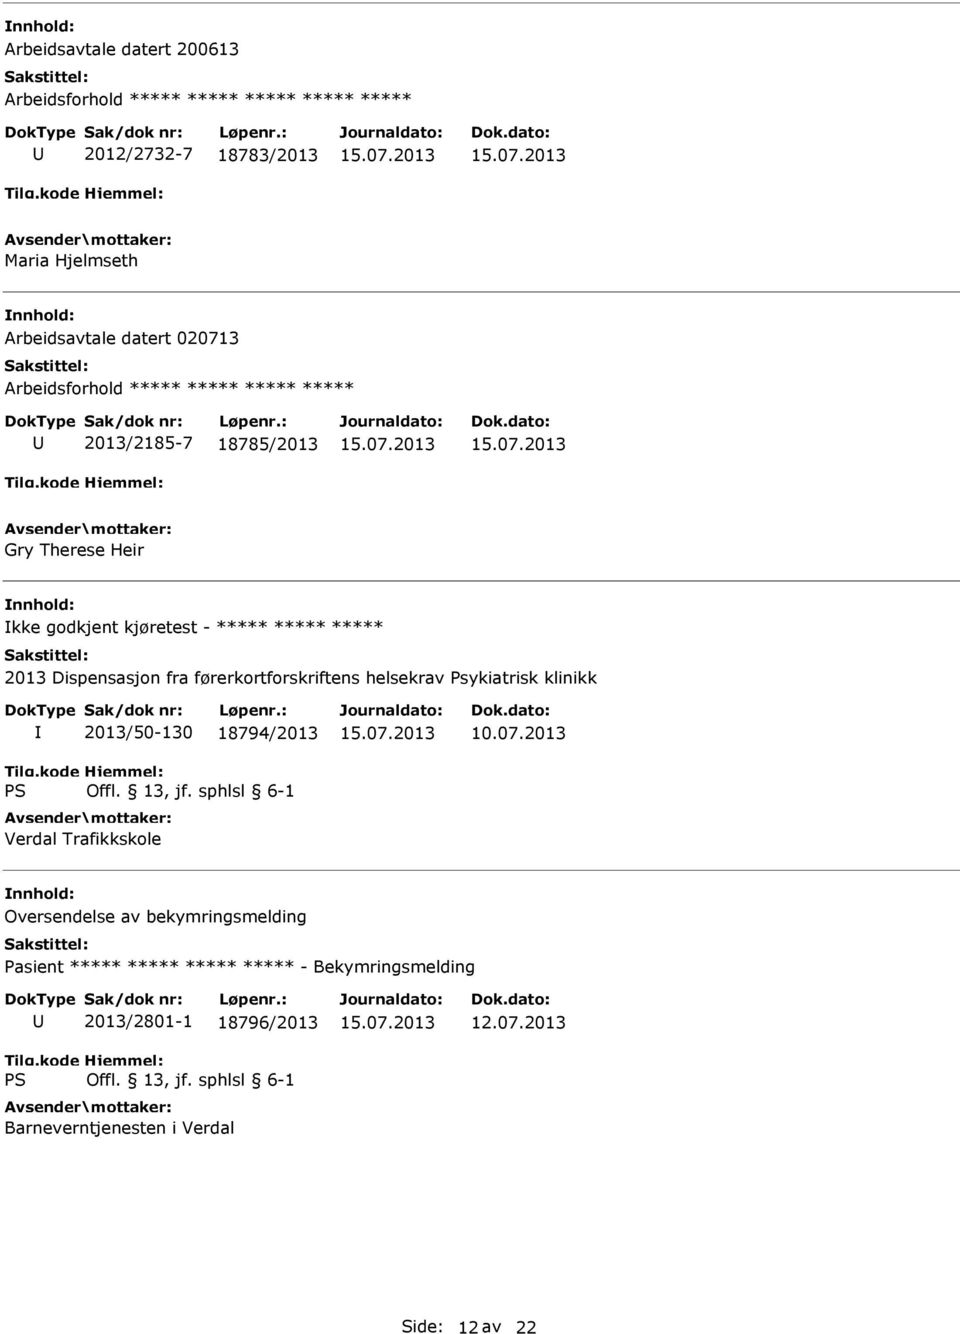 Dispensasjon fra førerkortforskriftens helsekrav Psykiatrisk klinikk 2013/50-130 18794/2013 Verdal Trafikkskole 10.07.